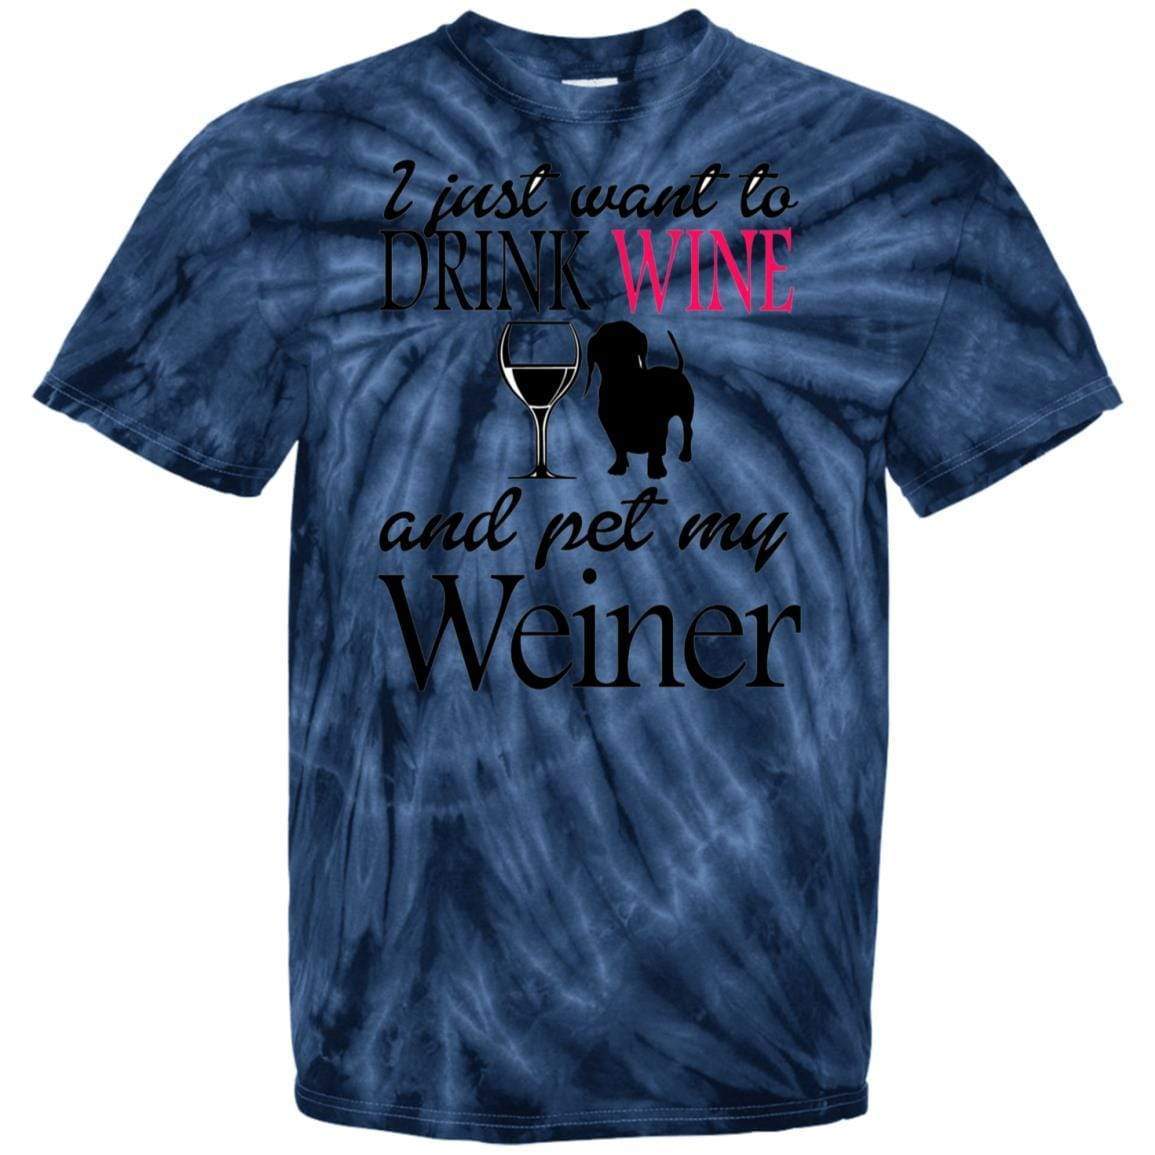 T-Shirts SpiderNavy / S WineyBitches.Co "Drink wine, Pet Weiner" 100% Cotton Tie Dye T-Shirt WineyBitchesCo